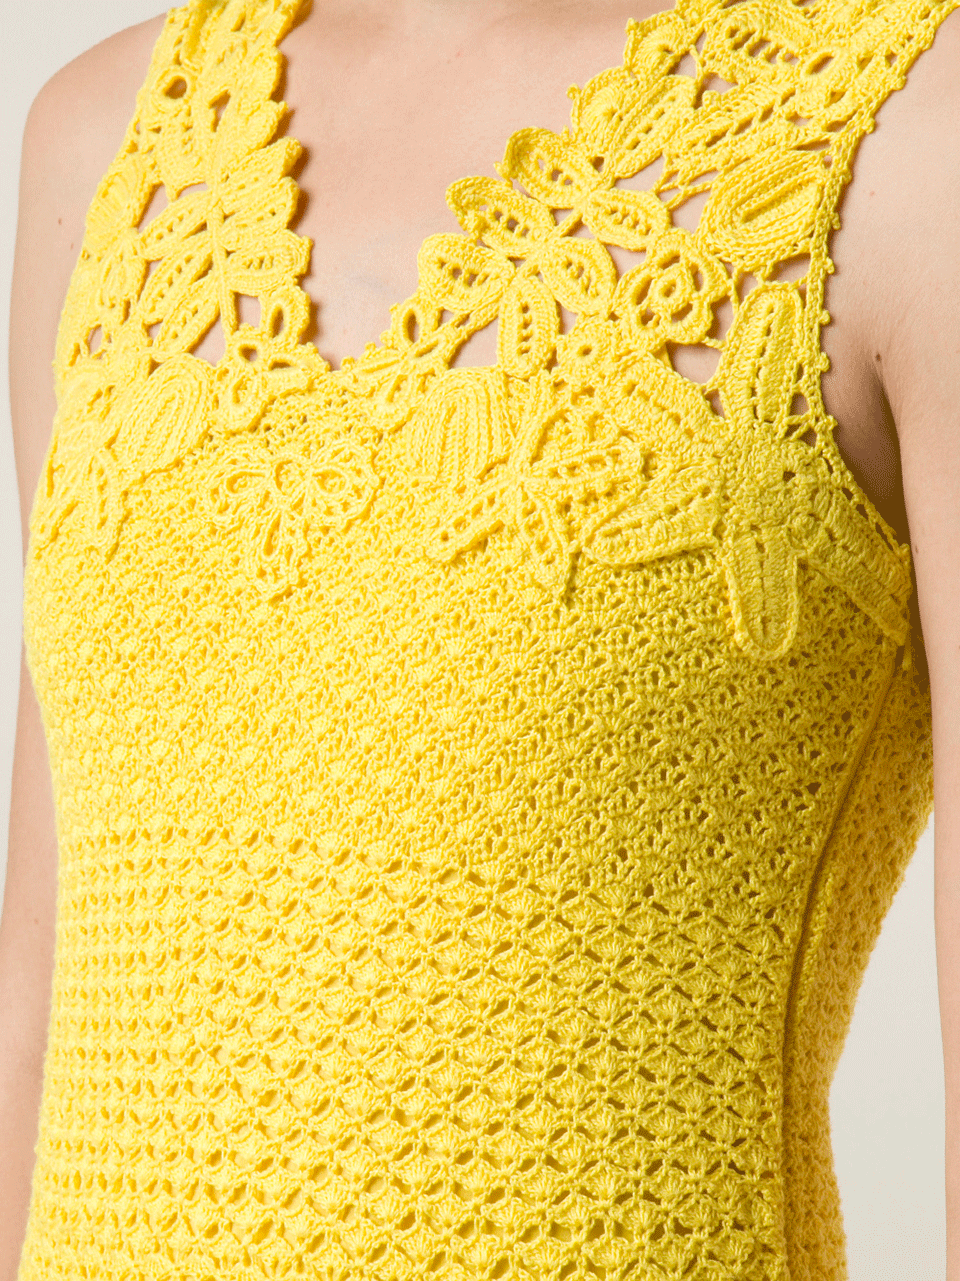 Drop Waist Crochet Dress CLOTHINGDRESSCASUAL OSCAR DE LA RENTA   